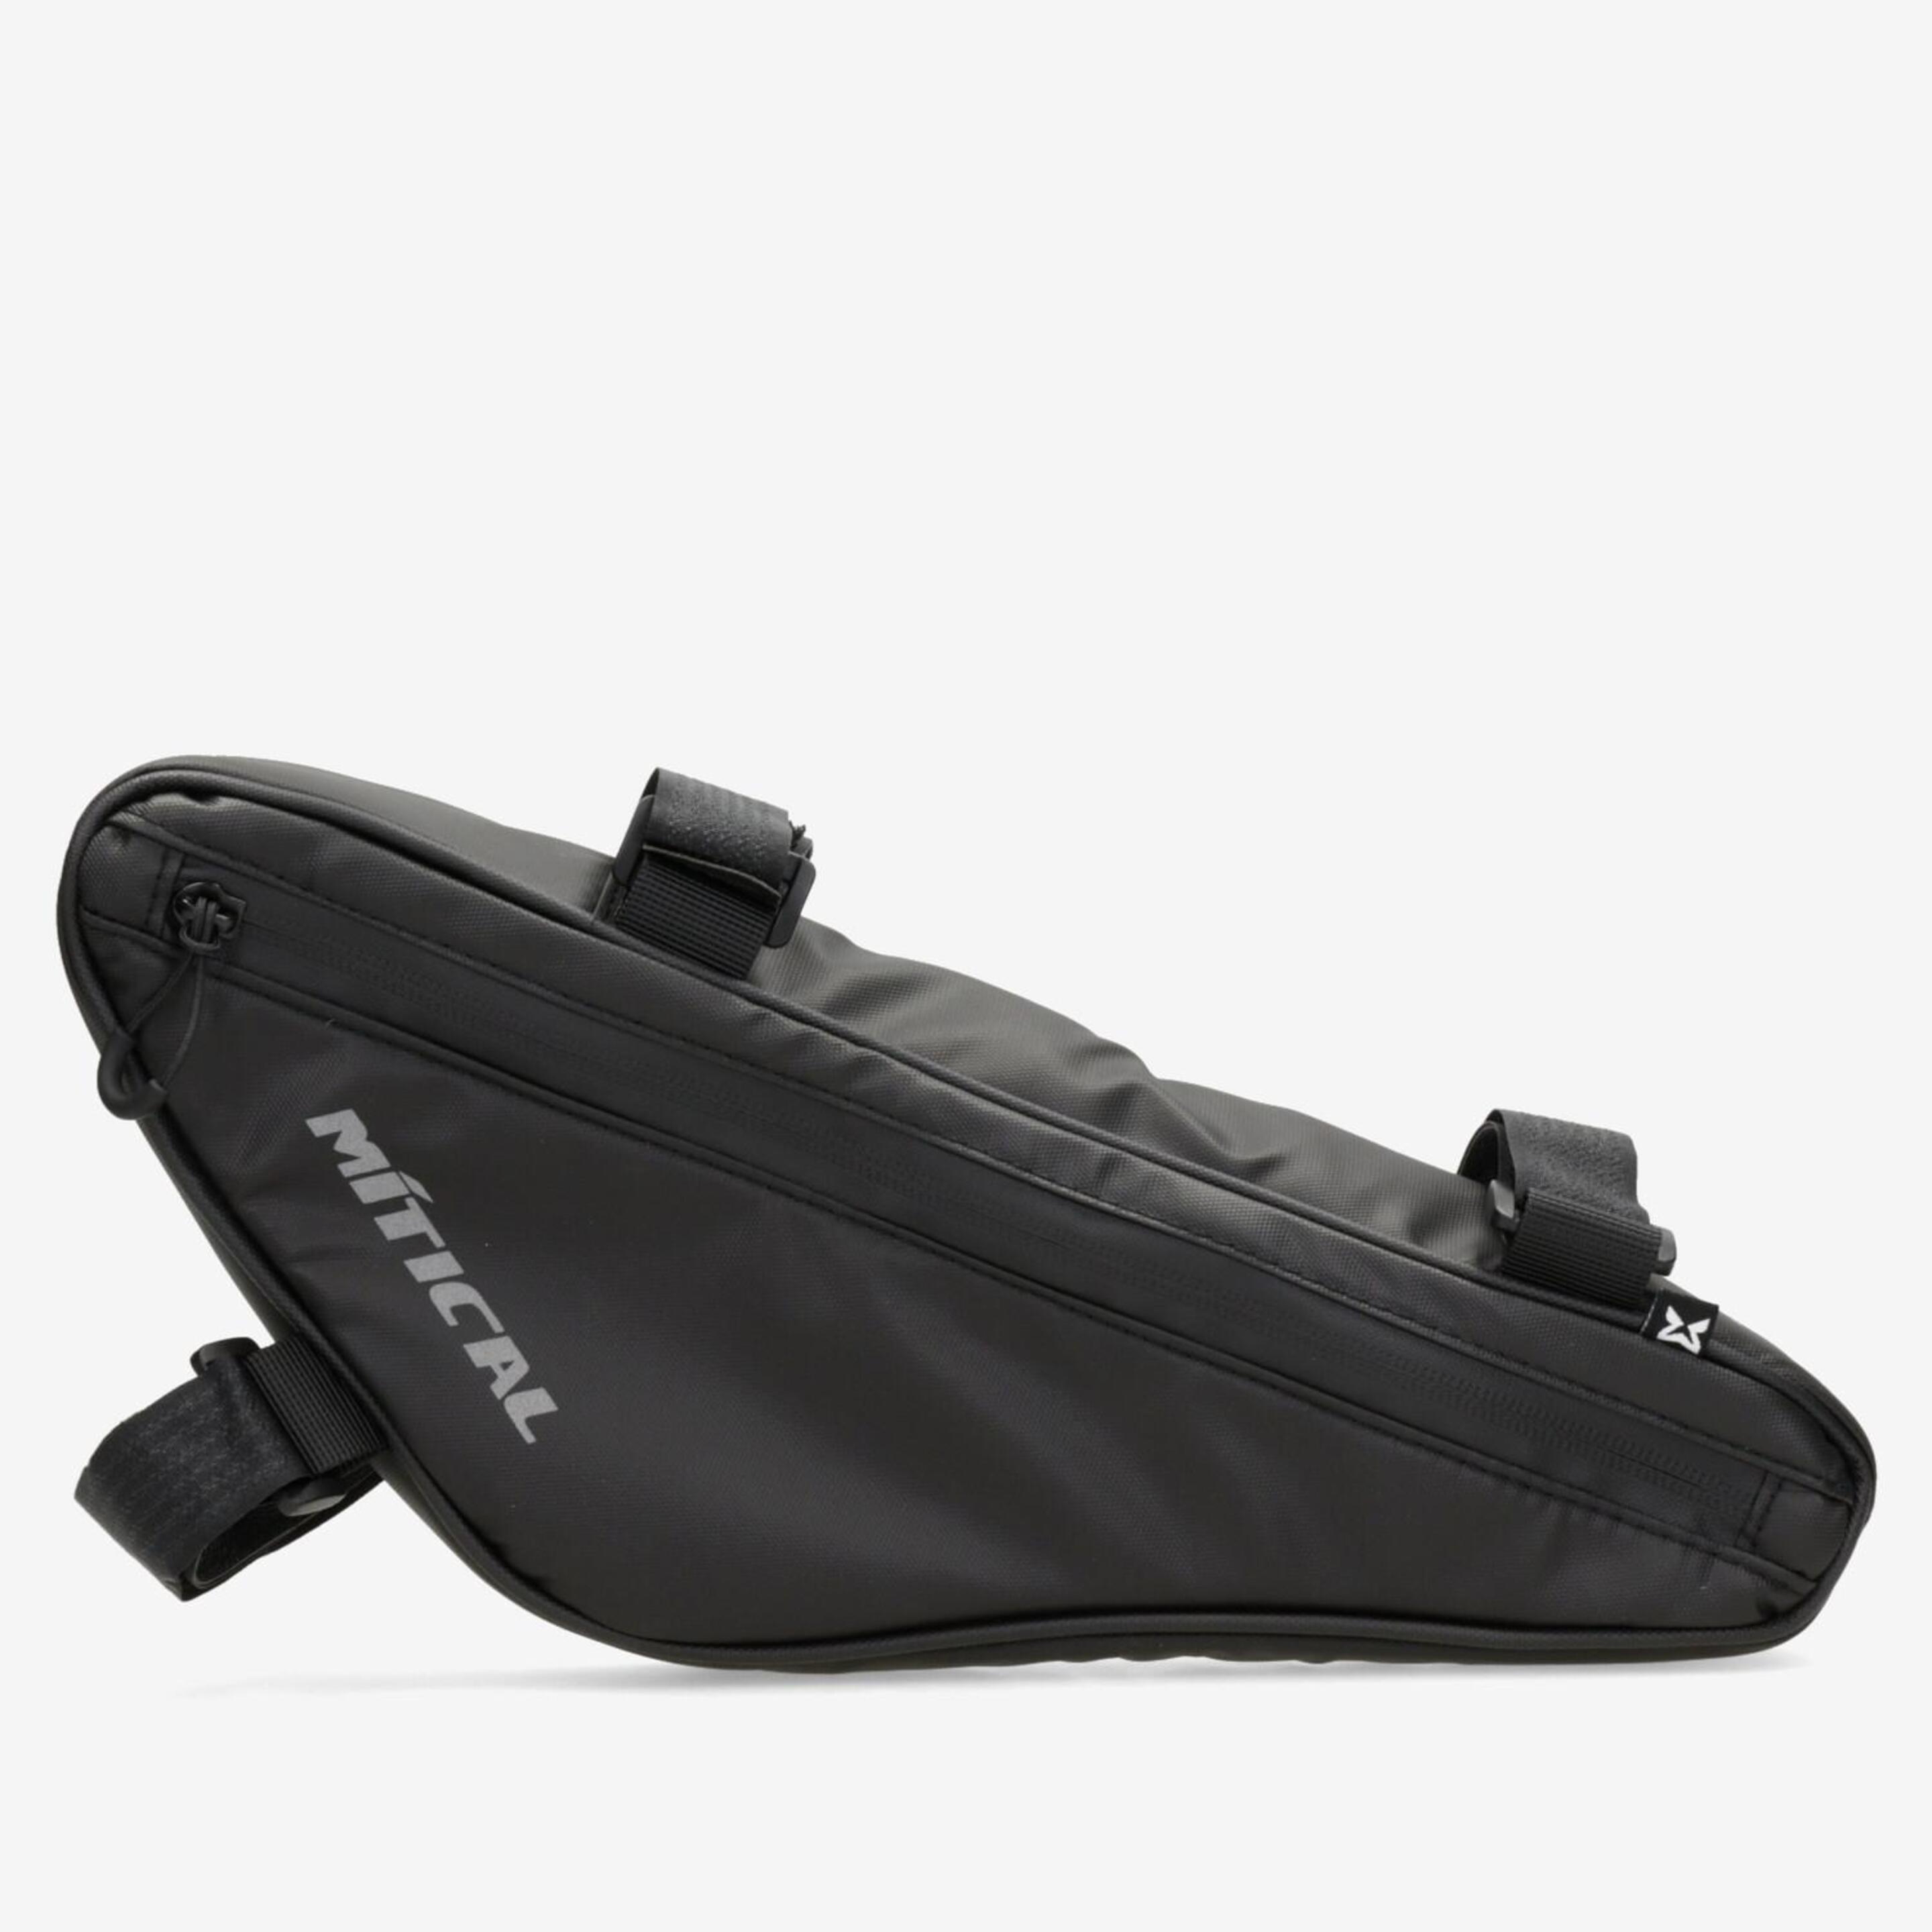 Bolsa Quadro Mítical - negro - Bolsa para Bicicleta